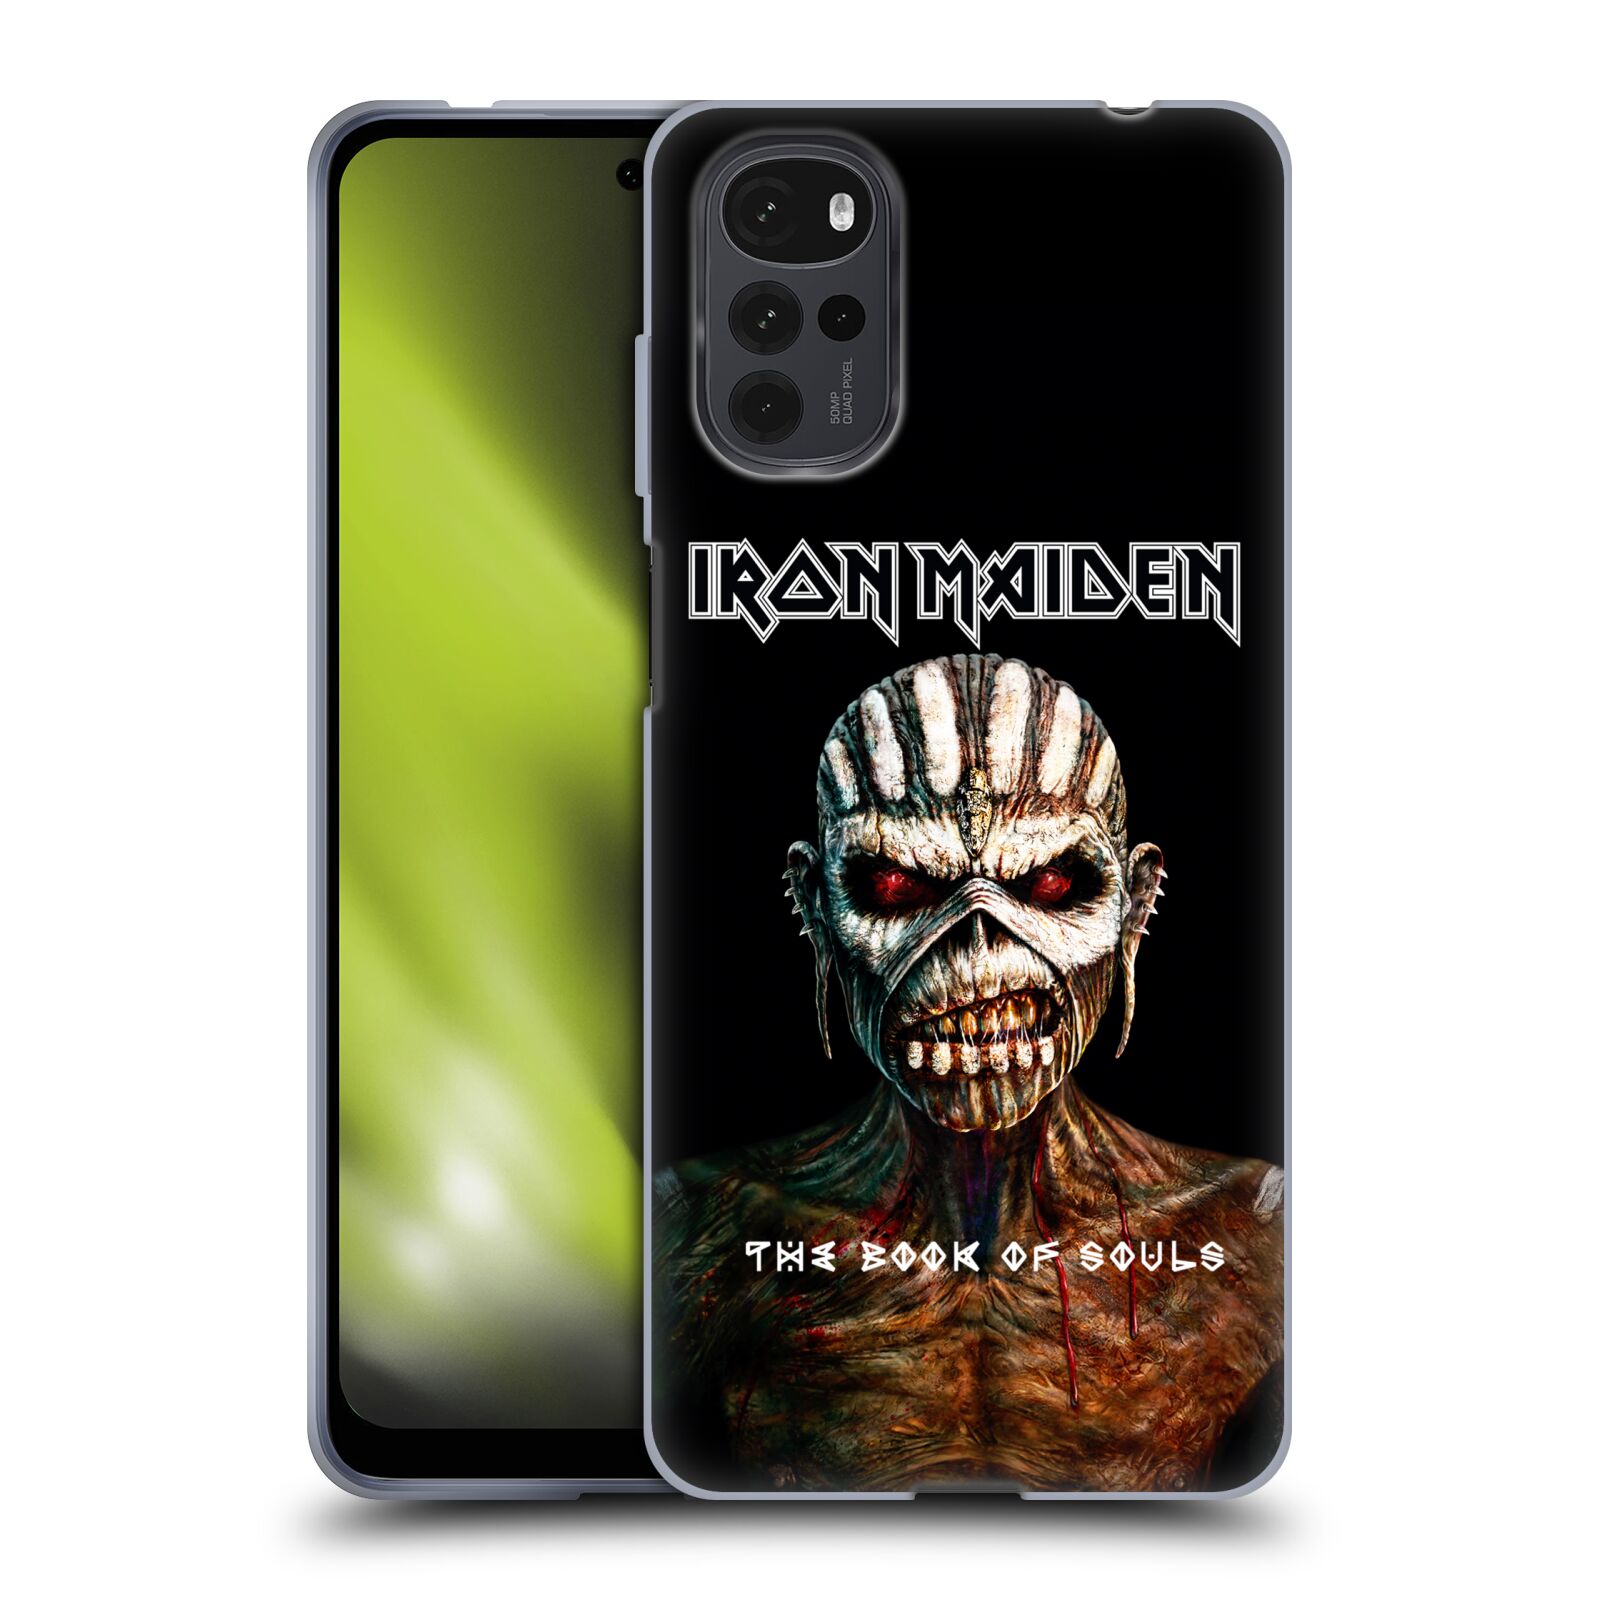 Silikonové pouzdro na mobil Motorola Moto G22 - Head Case - Iron Maiden - The Book Of Souls